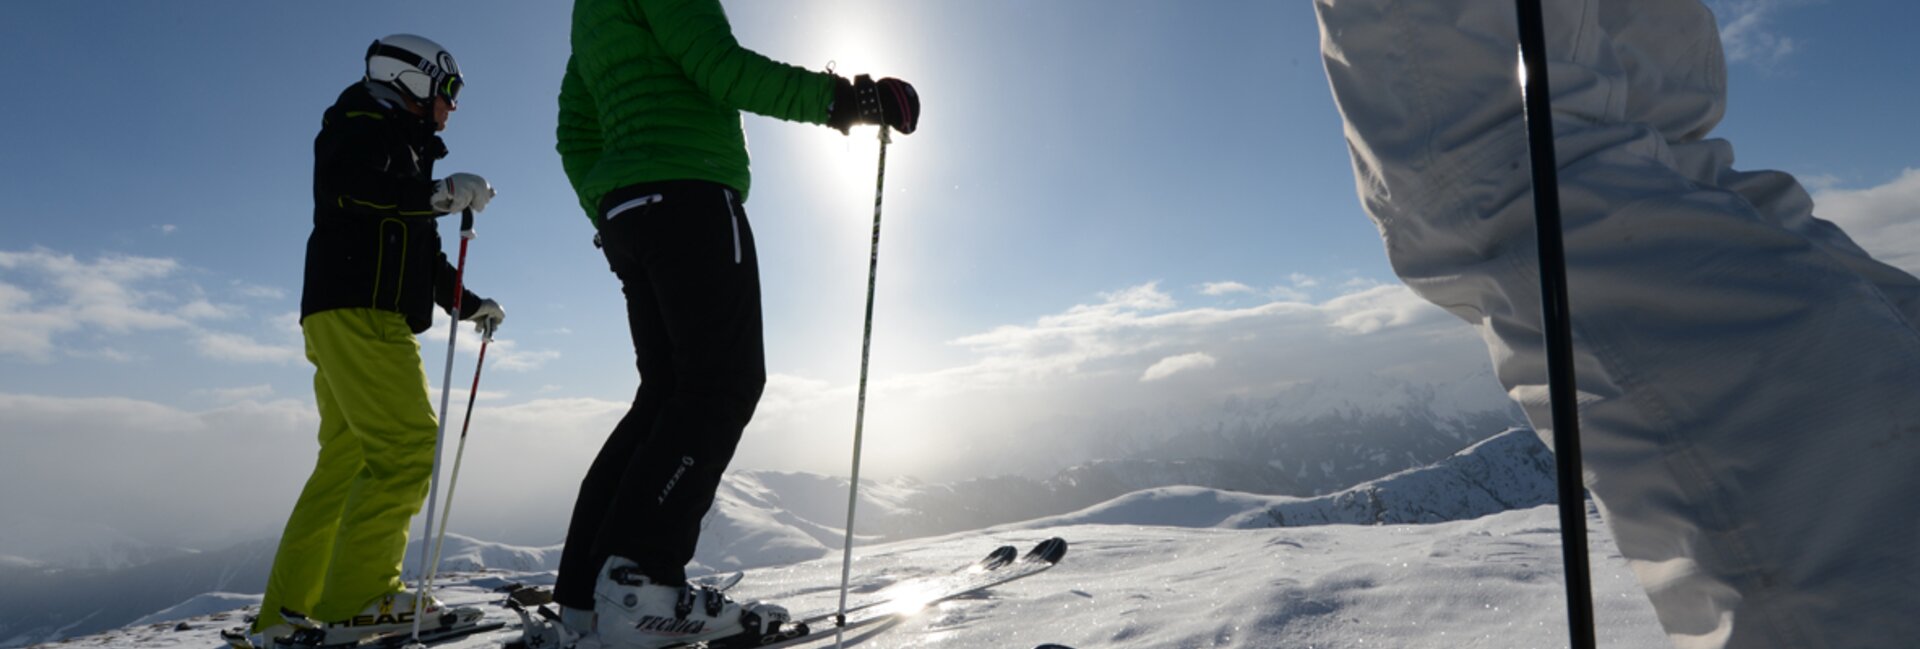 Ski resorts Val di Fiemme - skiing Val di Fiemme